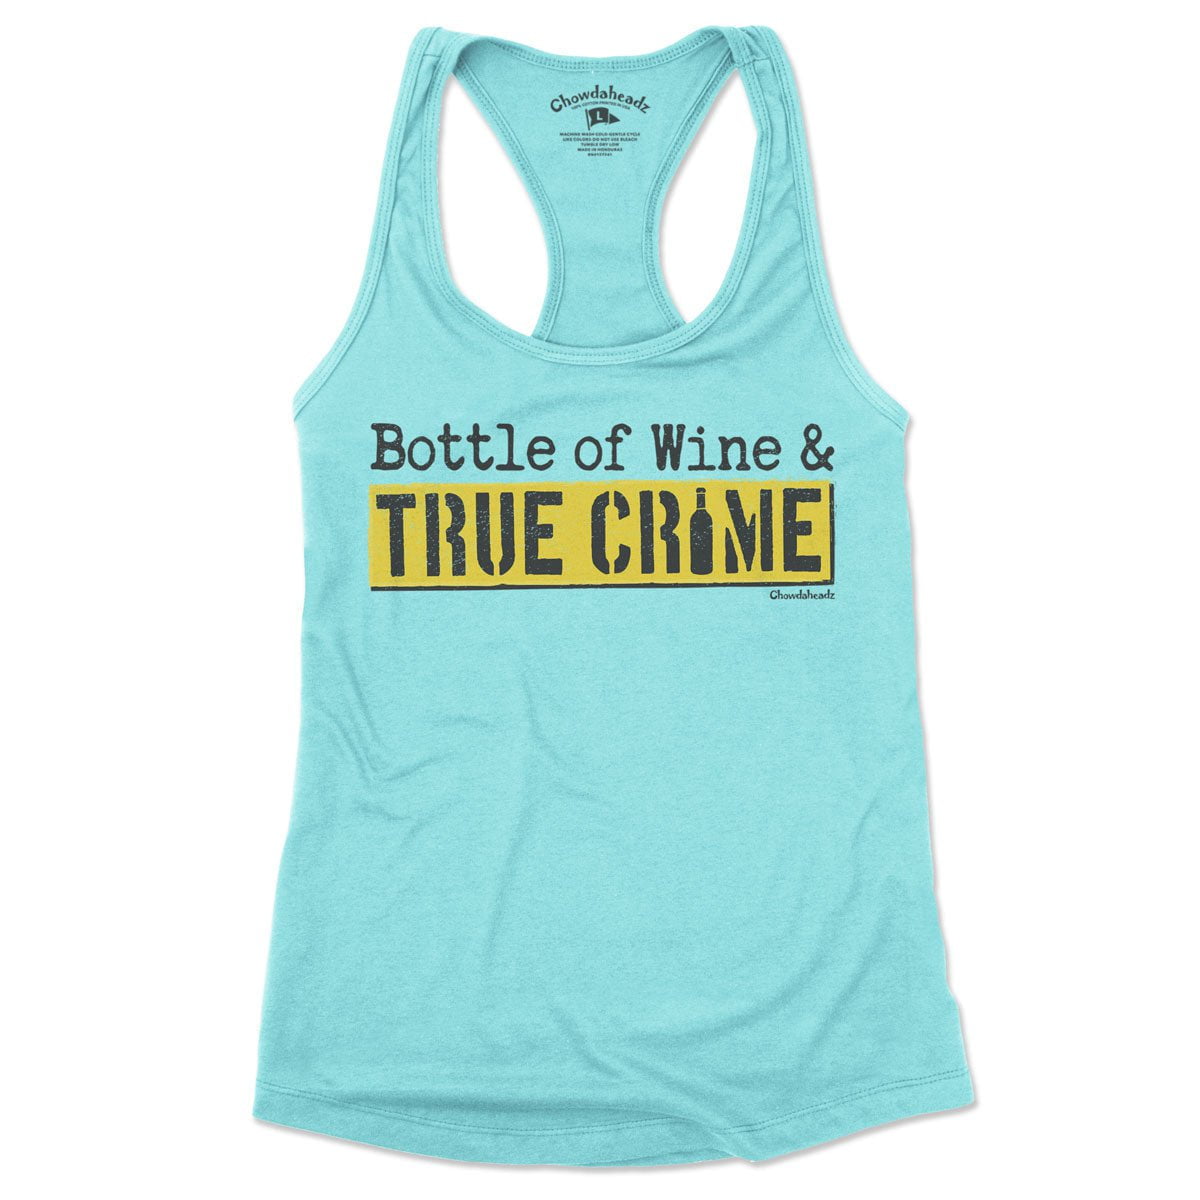 Bottle Of Wine & True Crime Women's Tank Top - Chowdaheadz